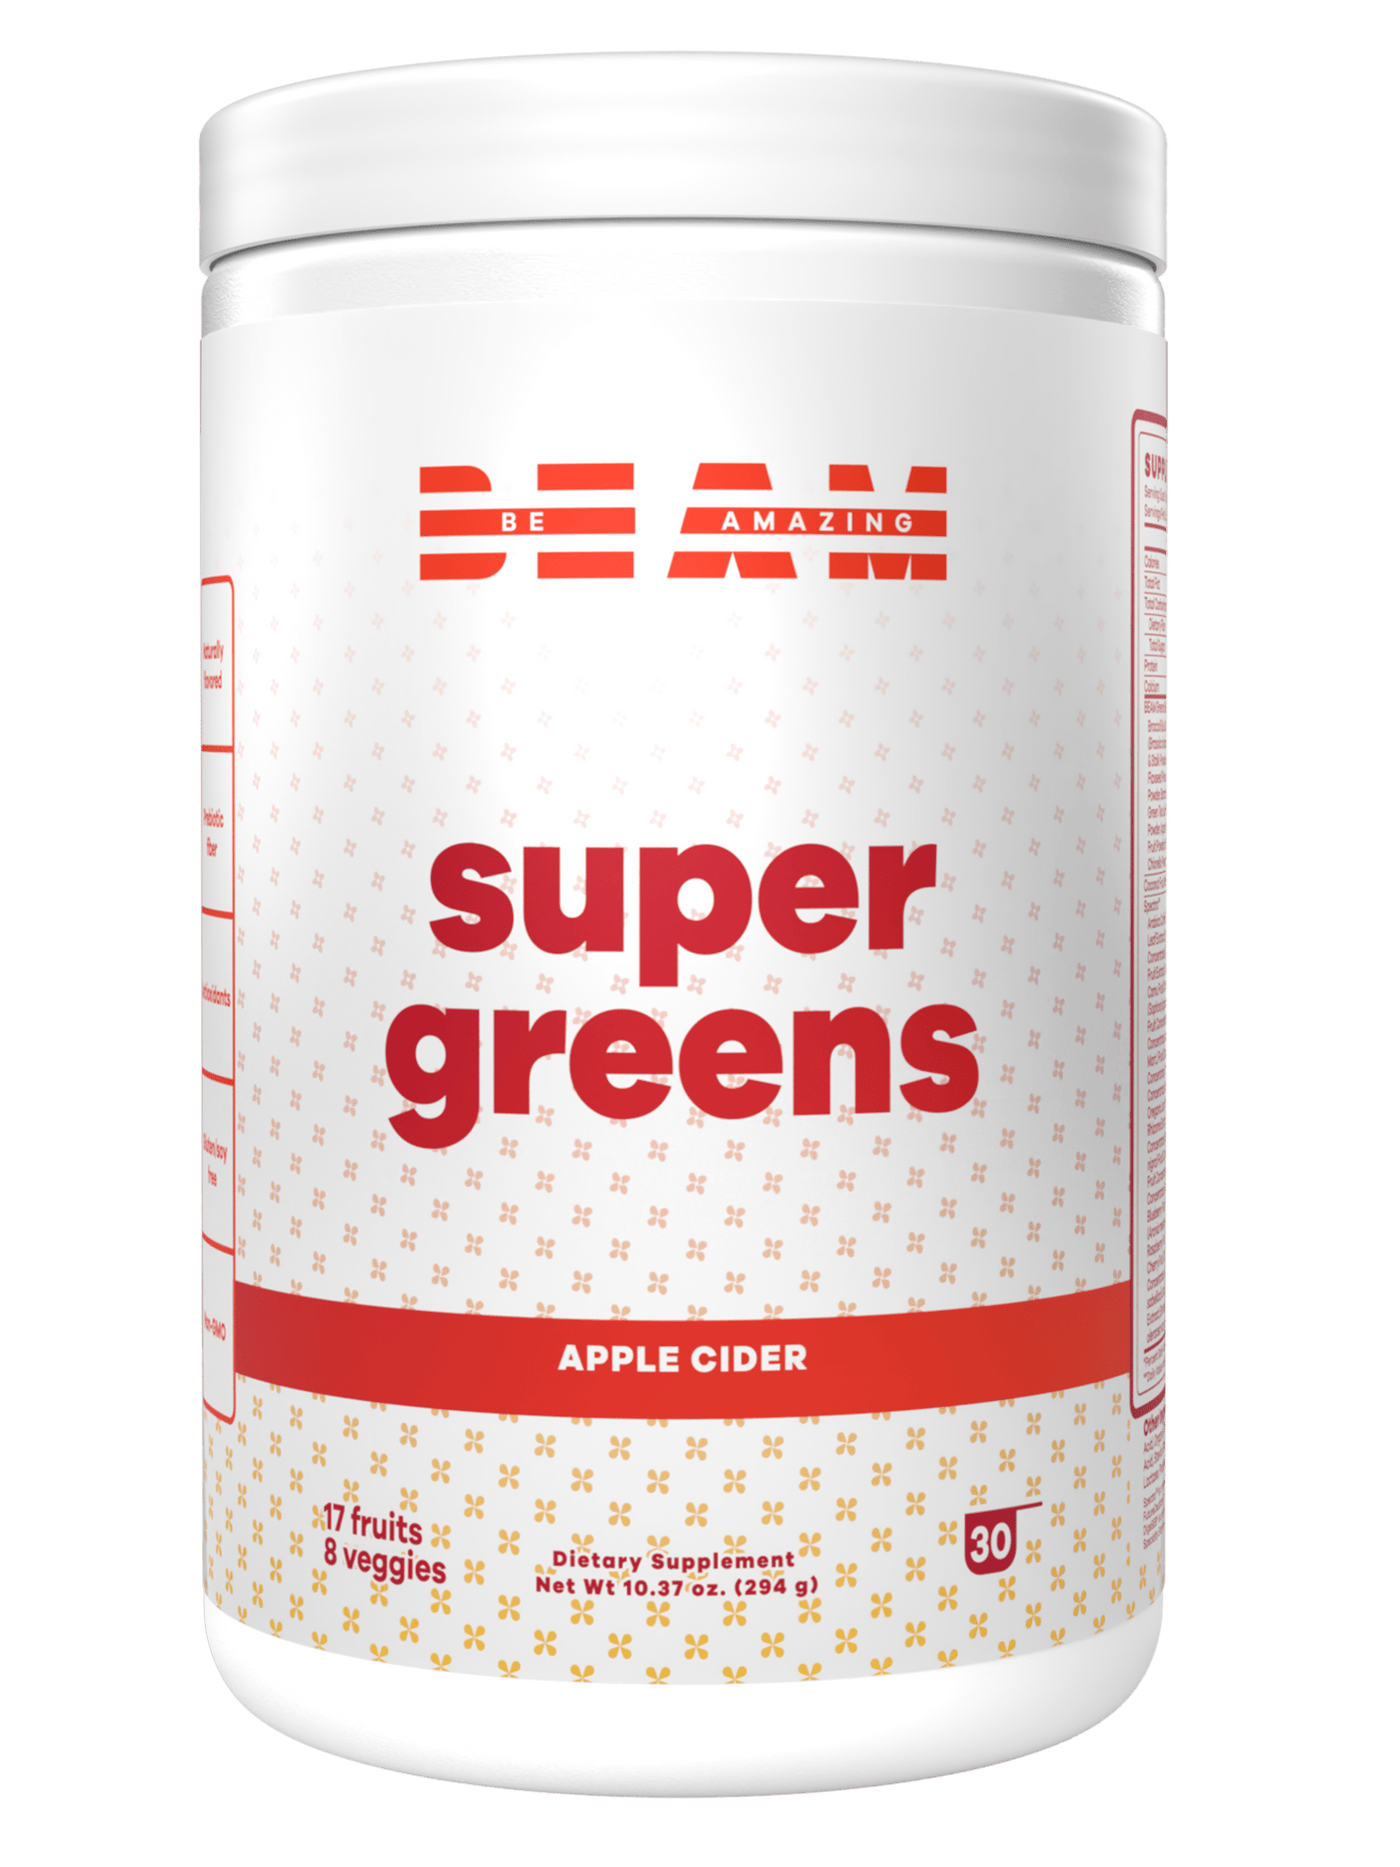 BEAM Super Greens Apple Cider#30 Servings / Apple Cider